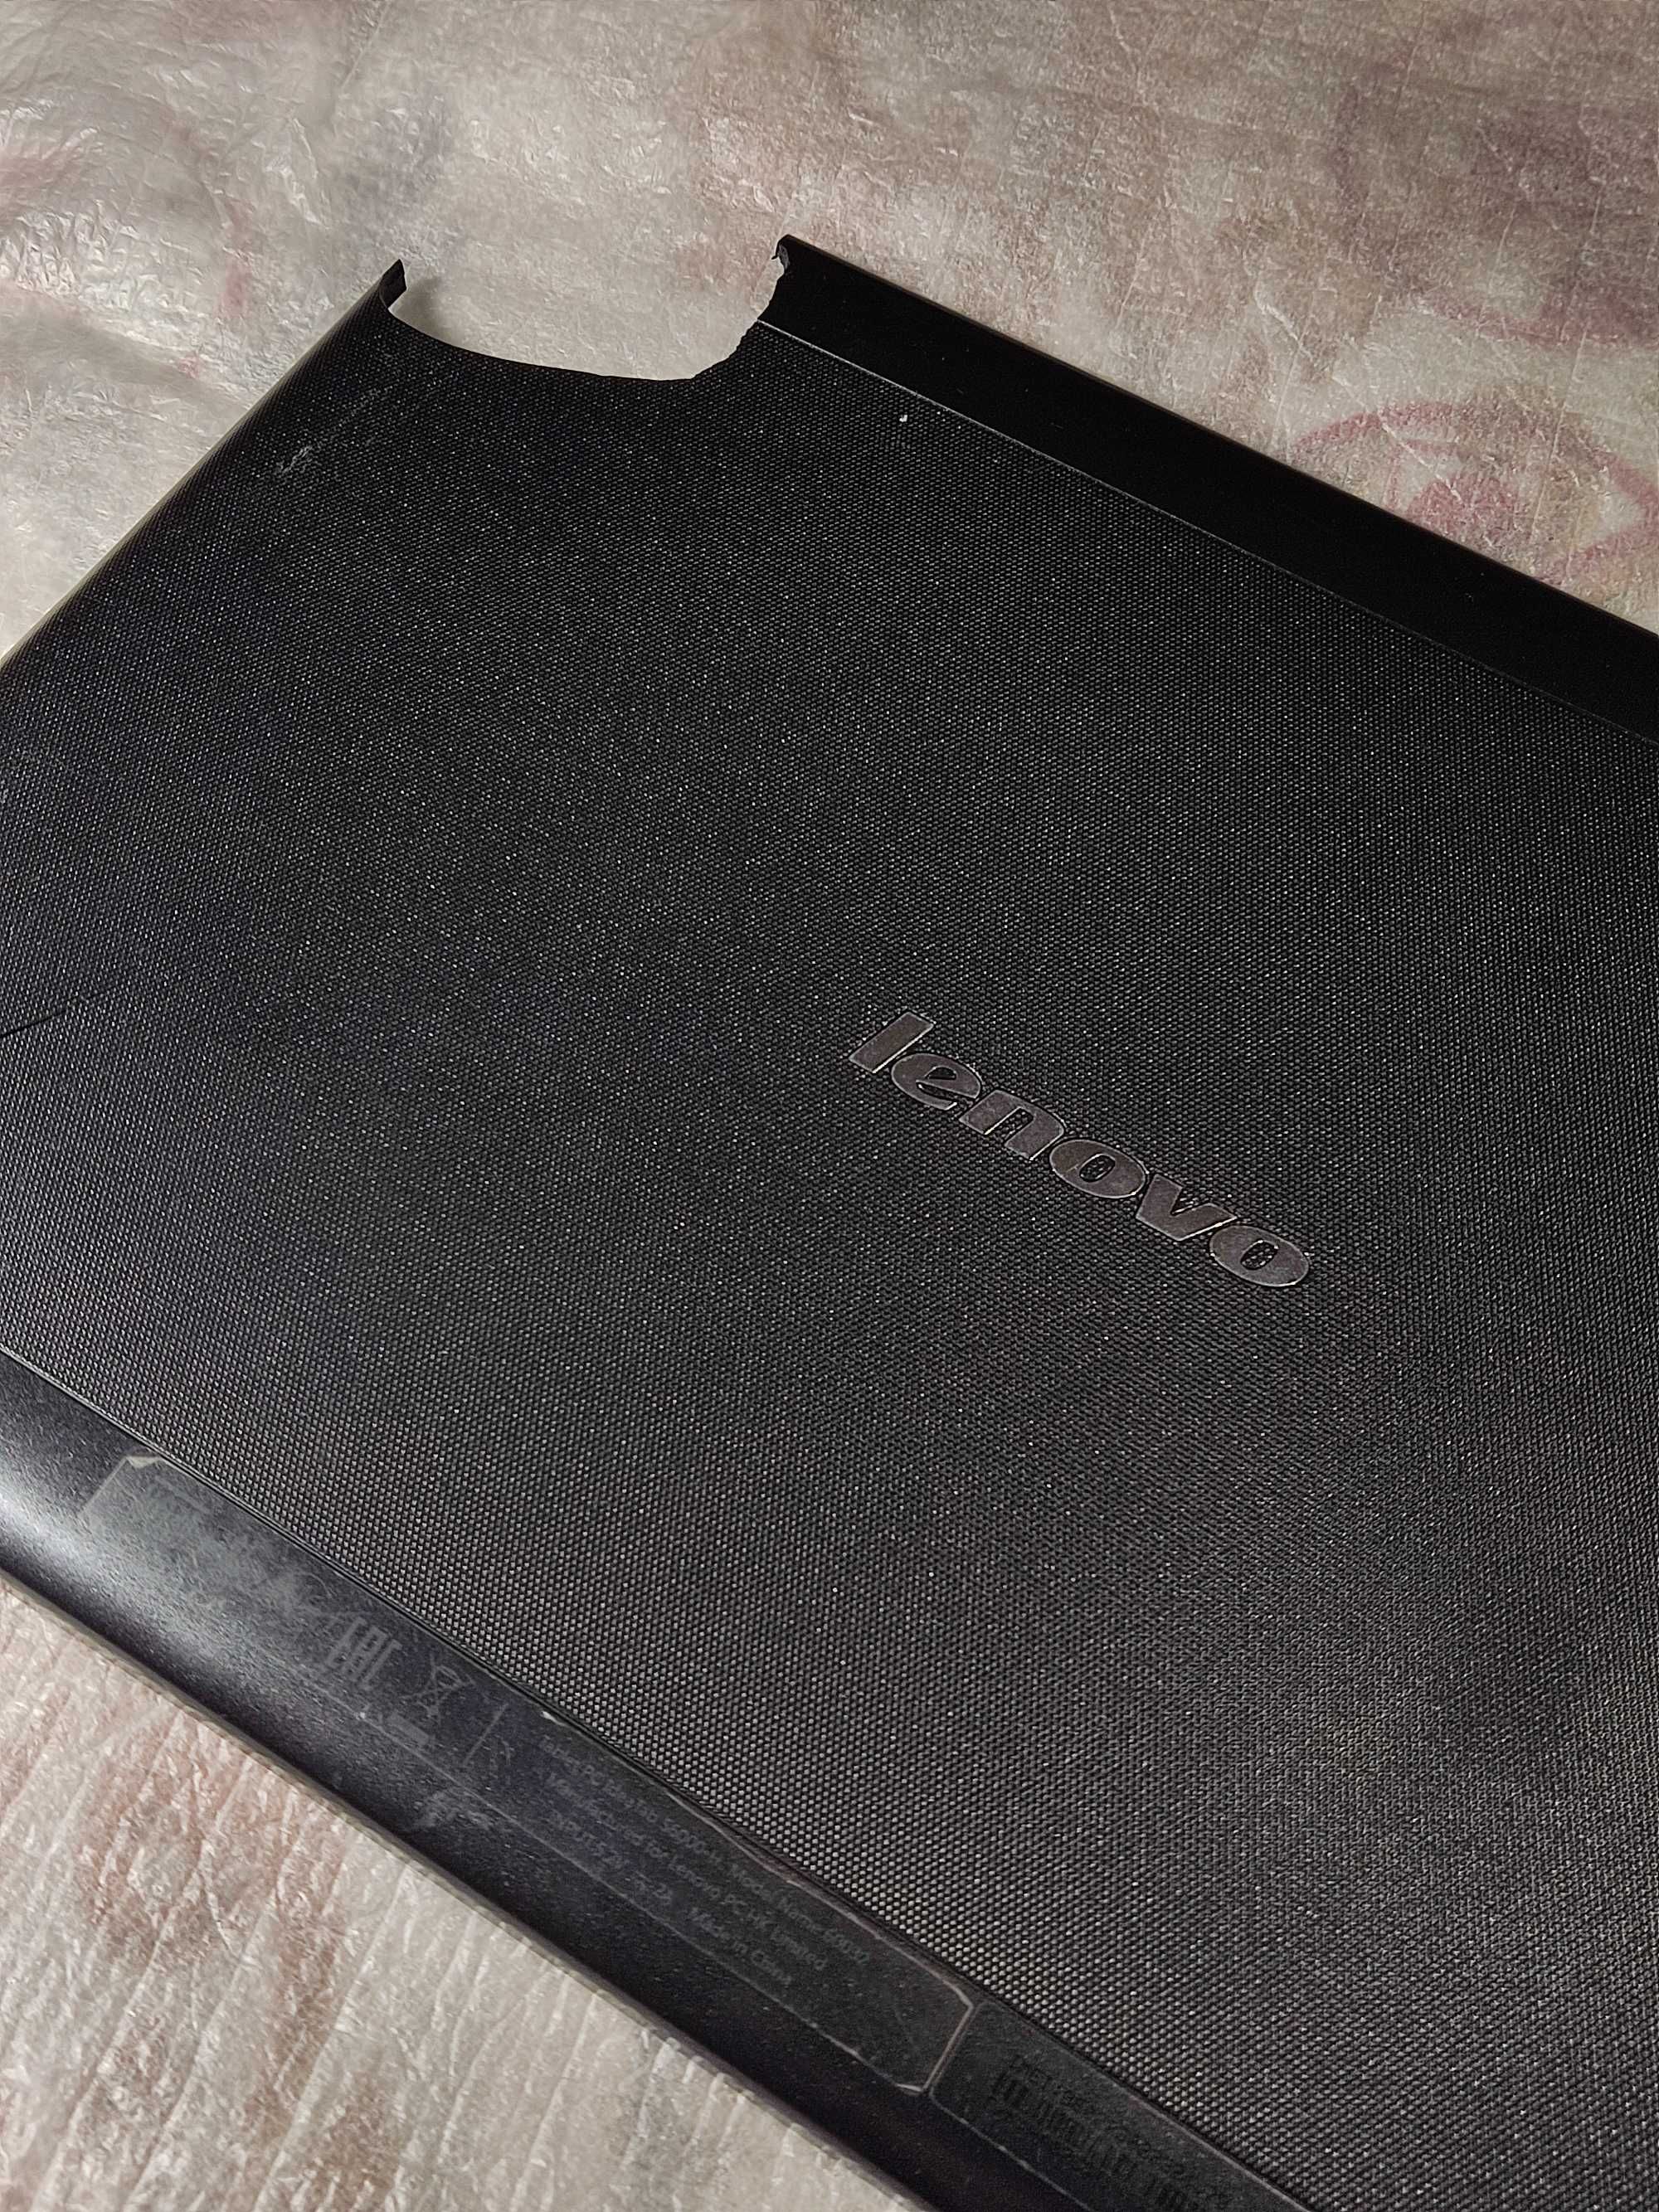 Планшет – Lenovo IdeaTab S6000-H 10.1" 1/16GB" / 3G Black ! (РАЗБОРКА)